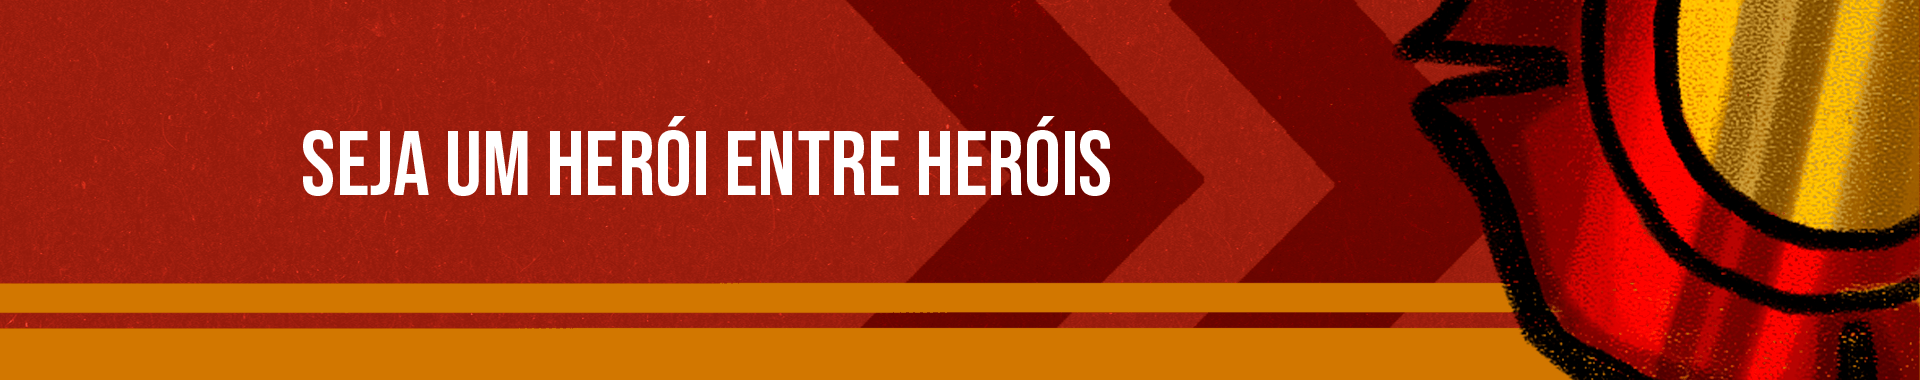 Seja um herói entre heróis banner principal